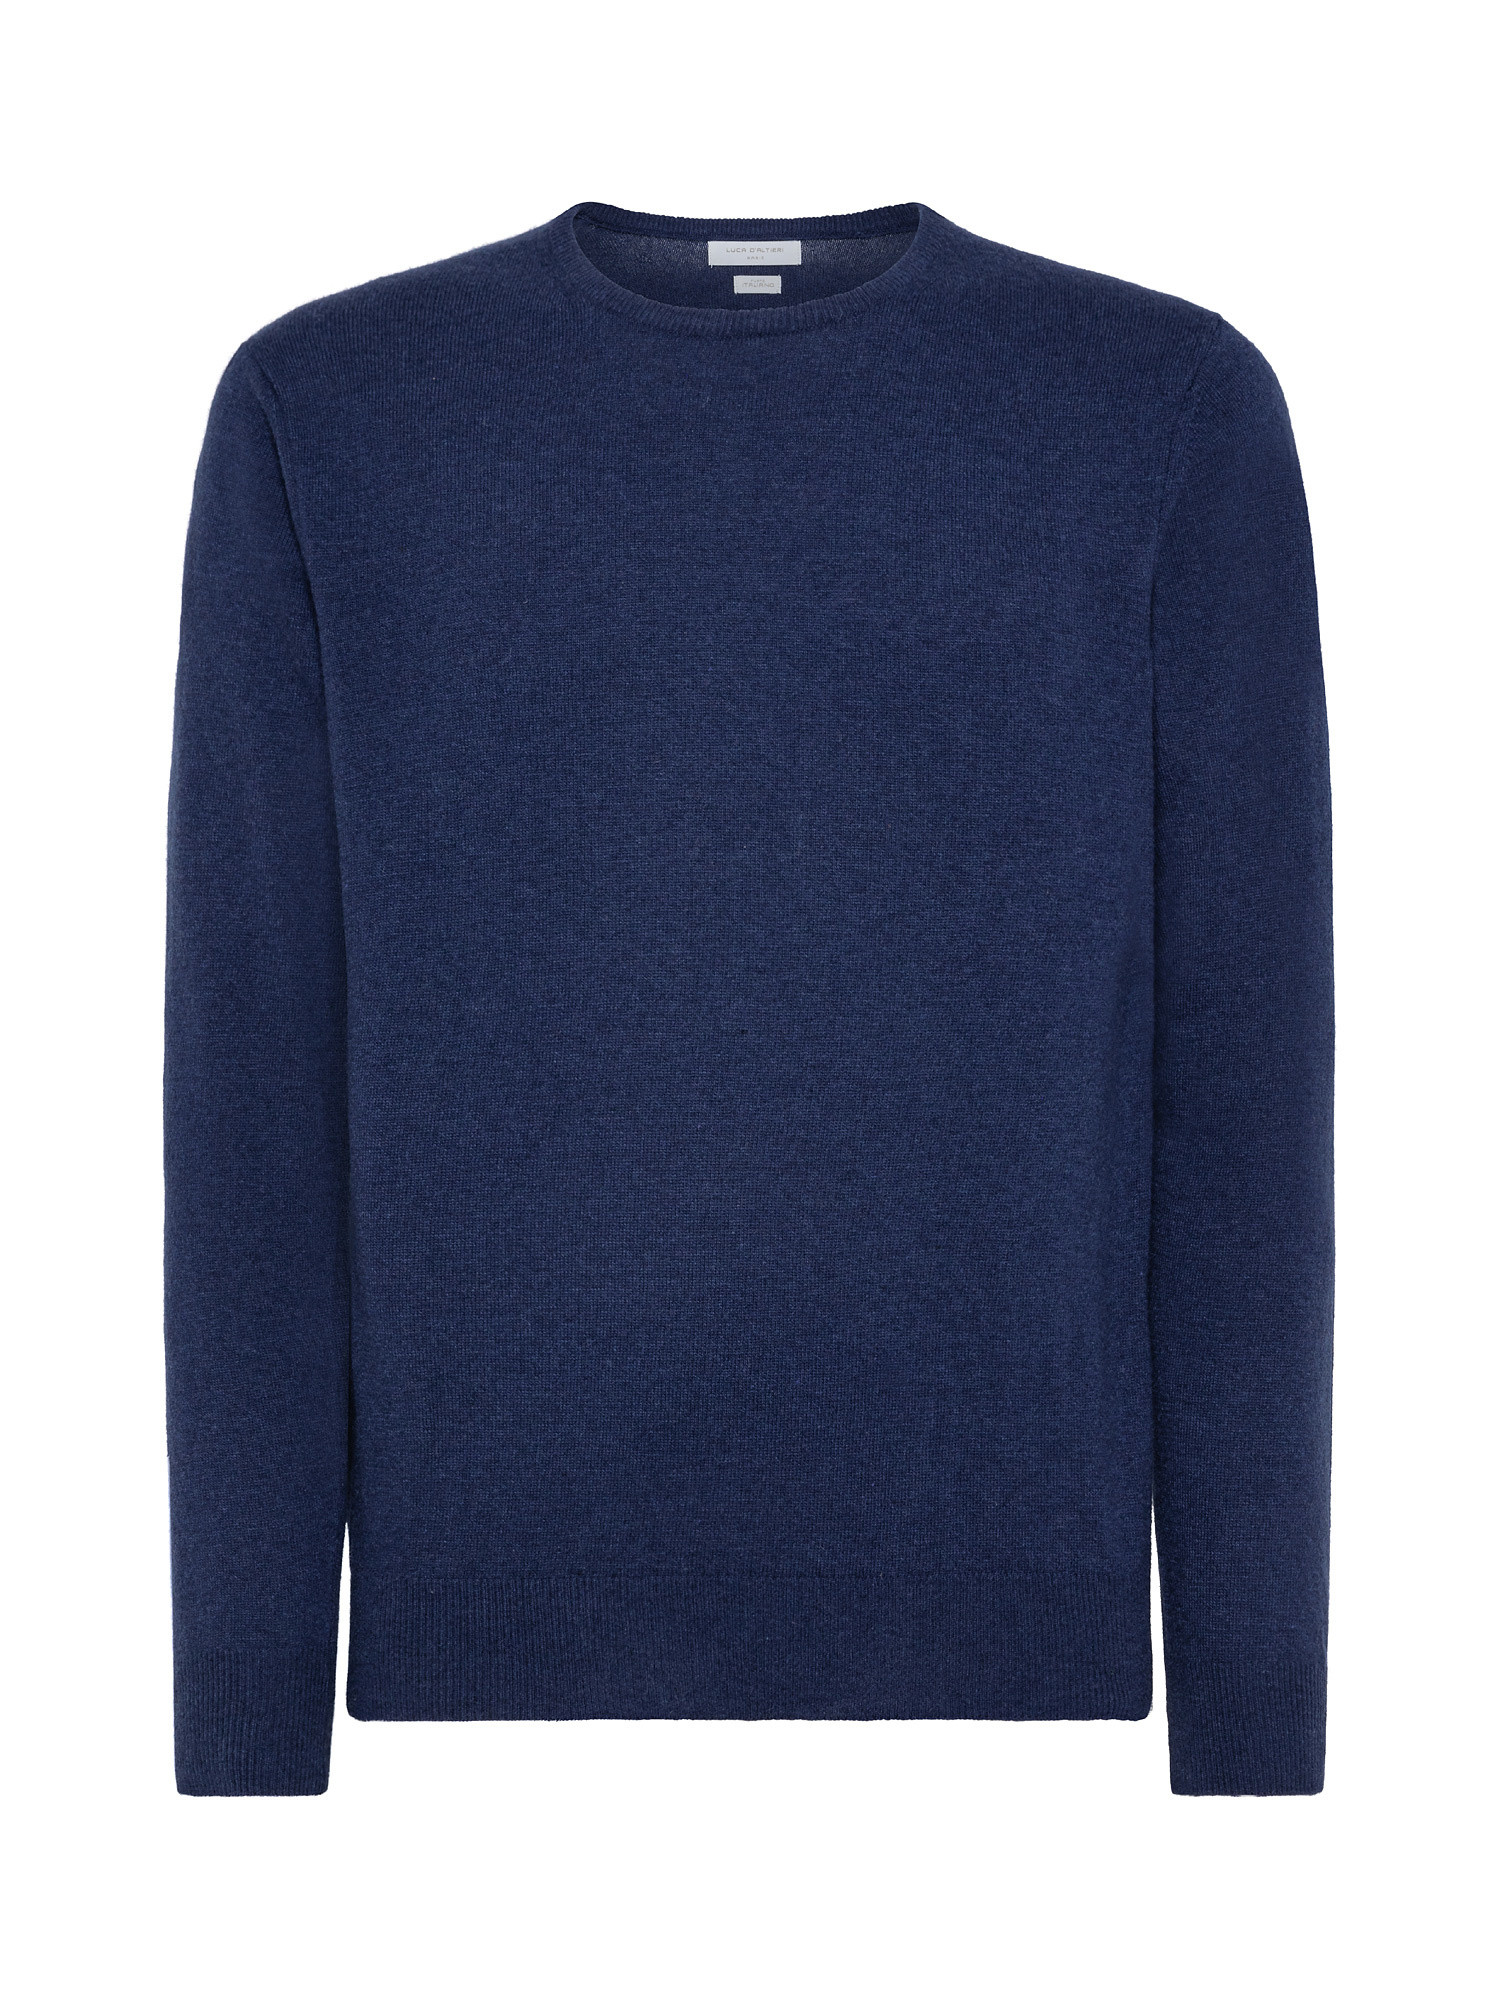 Basic cashmere blend pullover, Blue, large image number 0